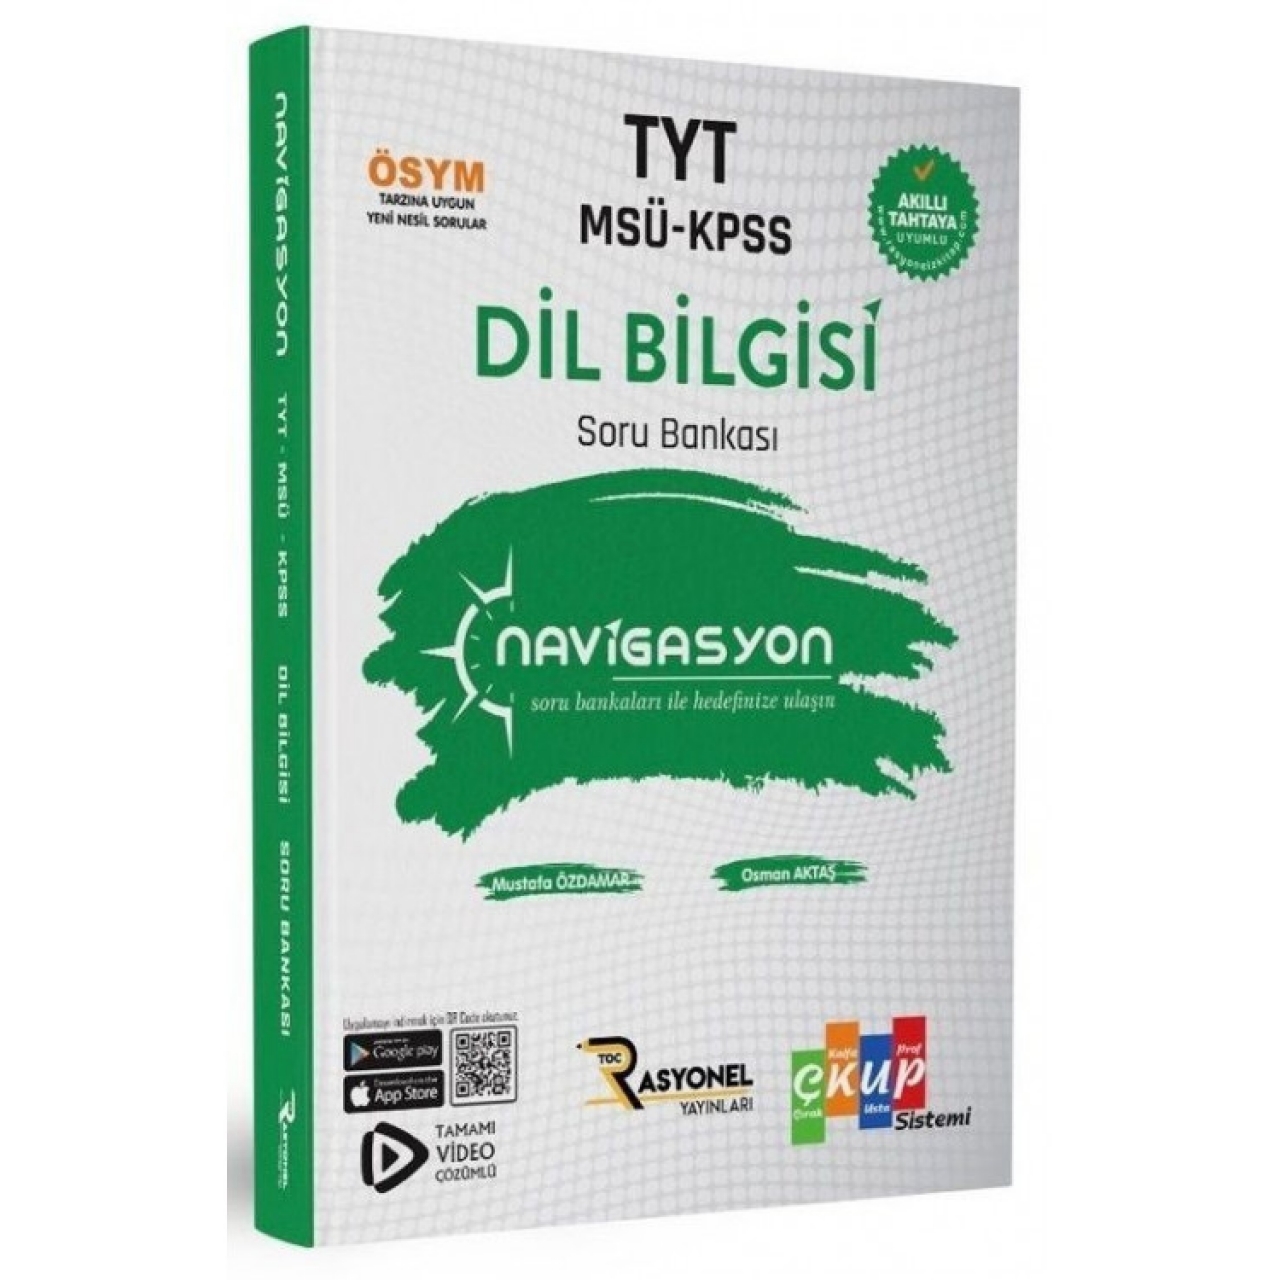 TYT-MSÜ-KPSS Dil Bilgisi Navigasyon Soru Bankası Rasyonel Yayınları